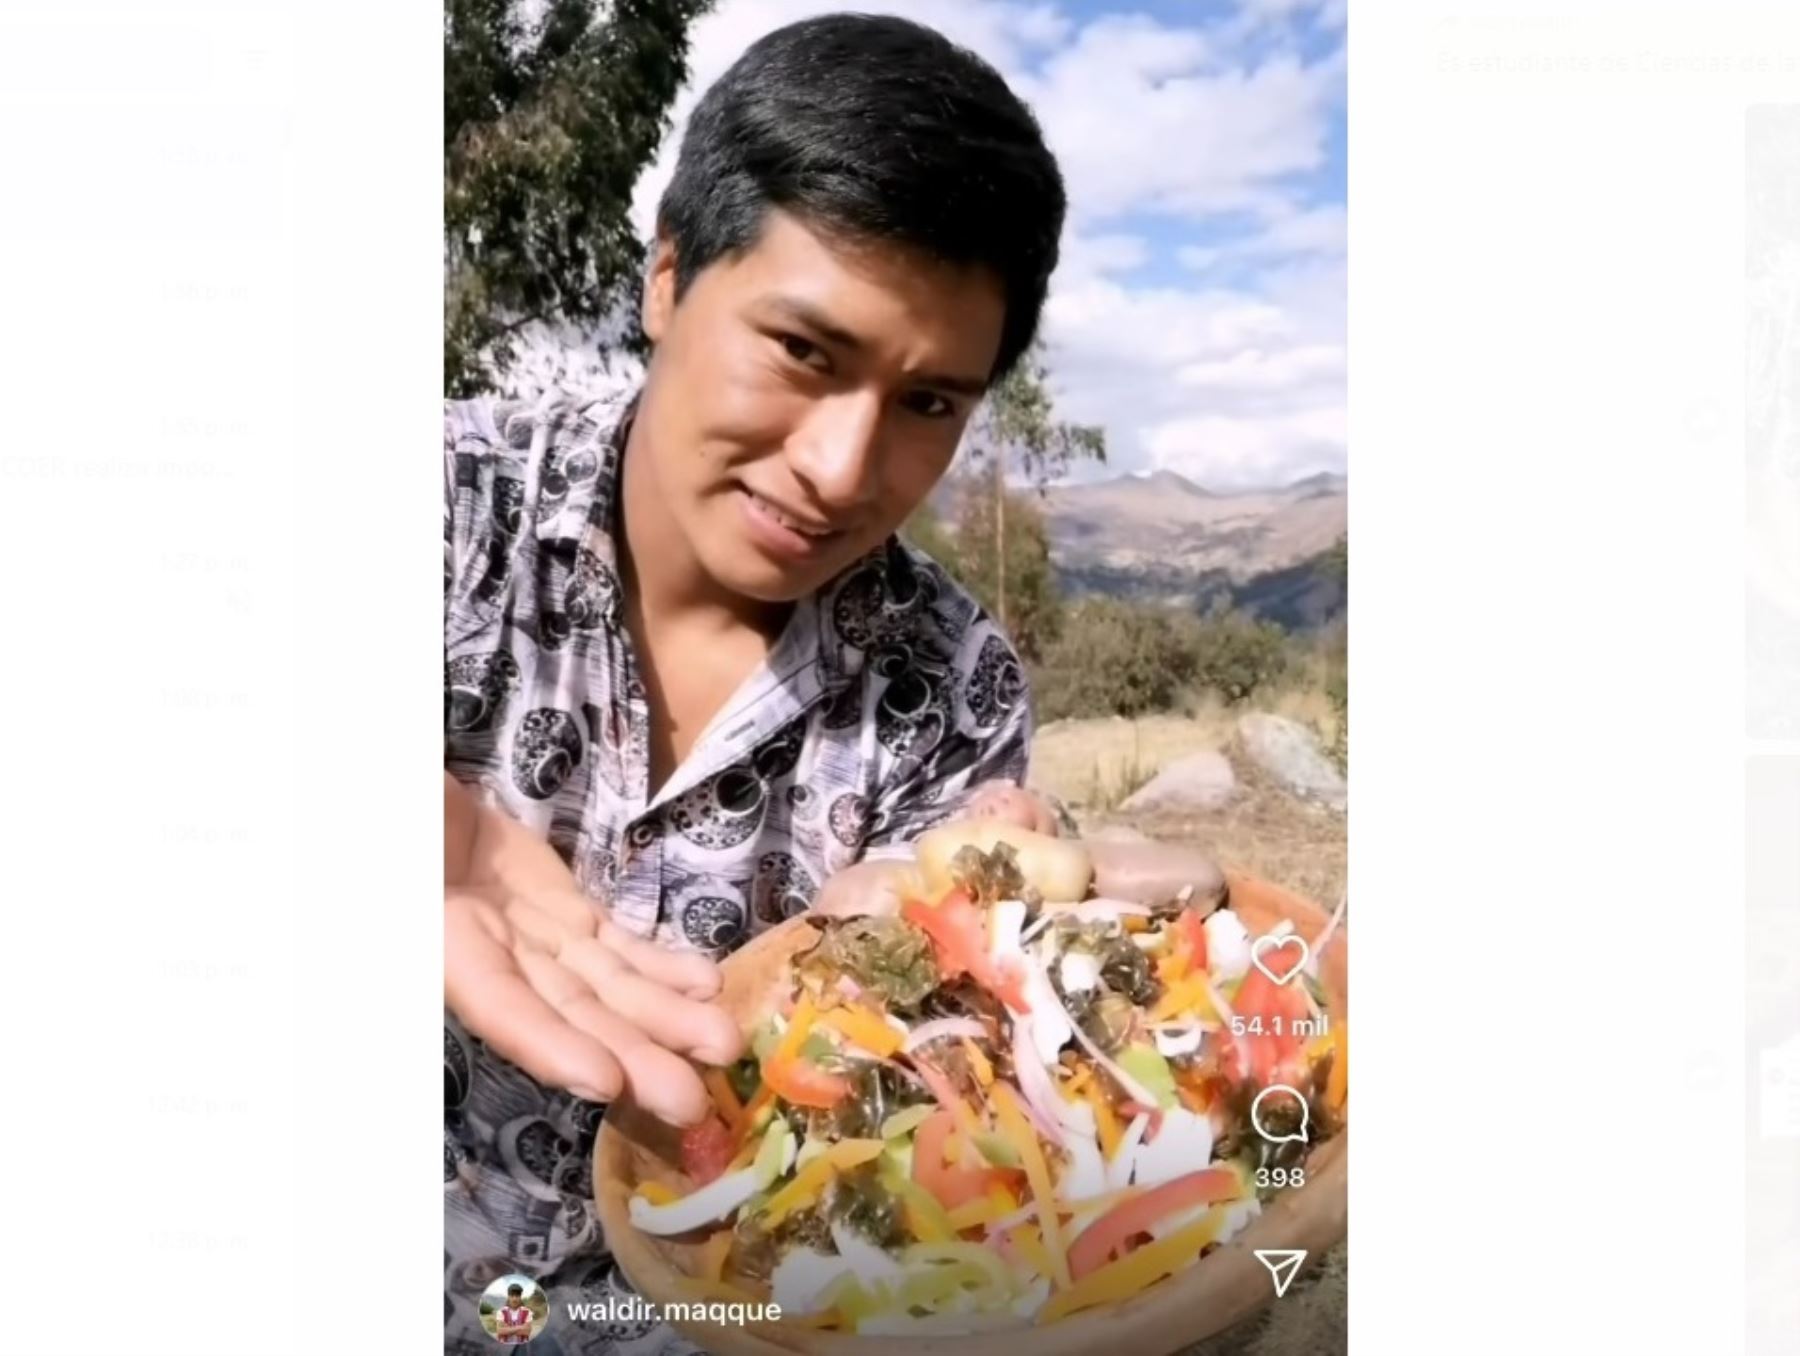 Waldir Maqqe es un joven cocinero cusqueño que es sensación en Instagram y TikTok, Desde Viacha, una comunidad ubicada en Pisac, Cusco, prepara platos tradicionales que cautivan a sus seguidores.